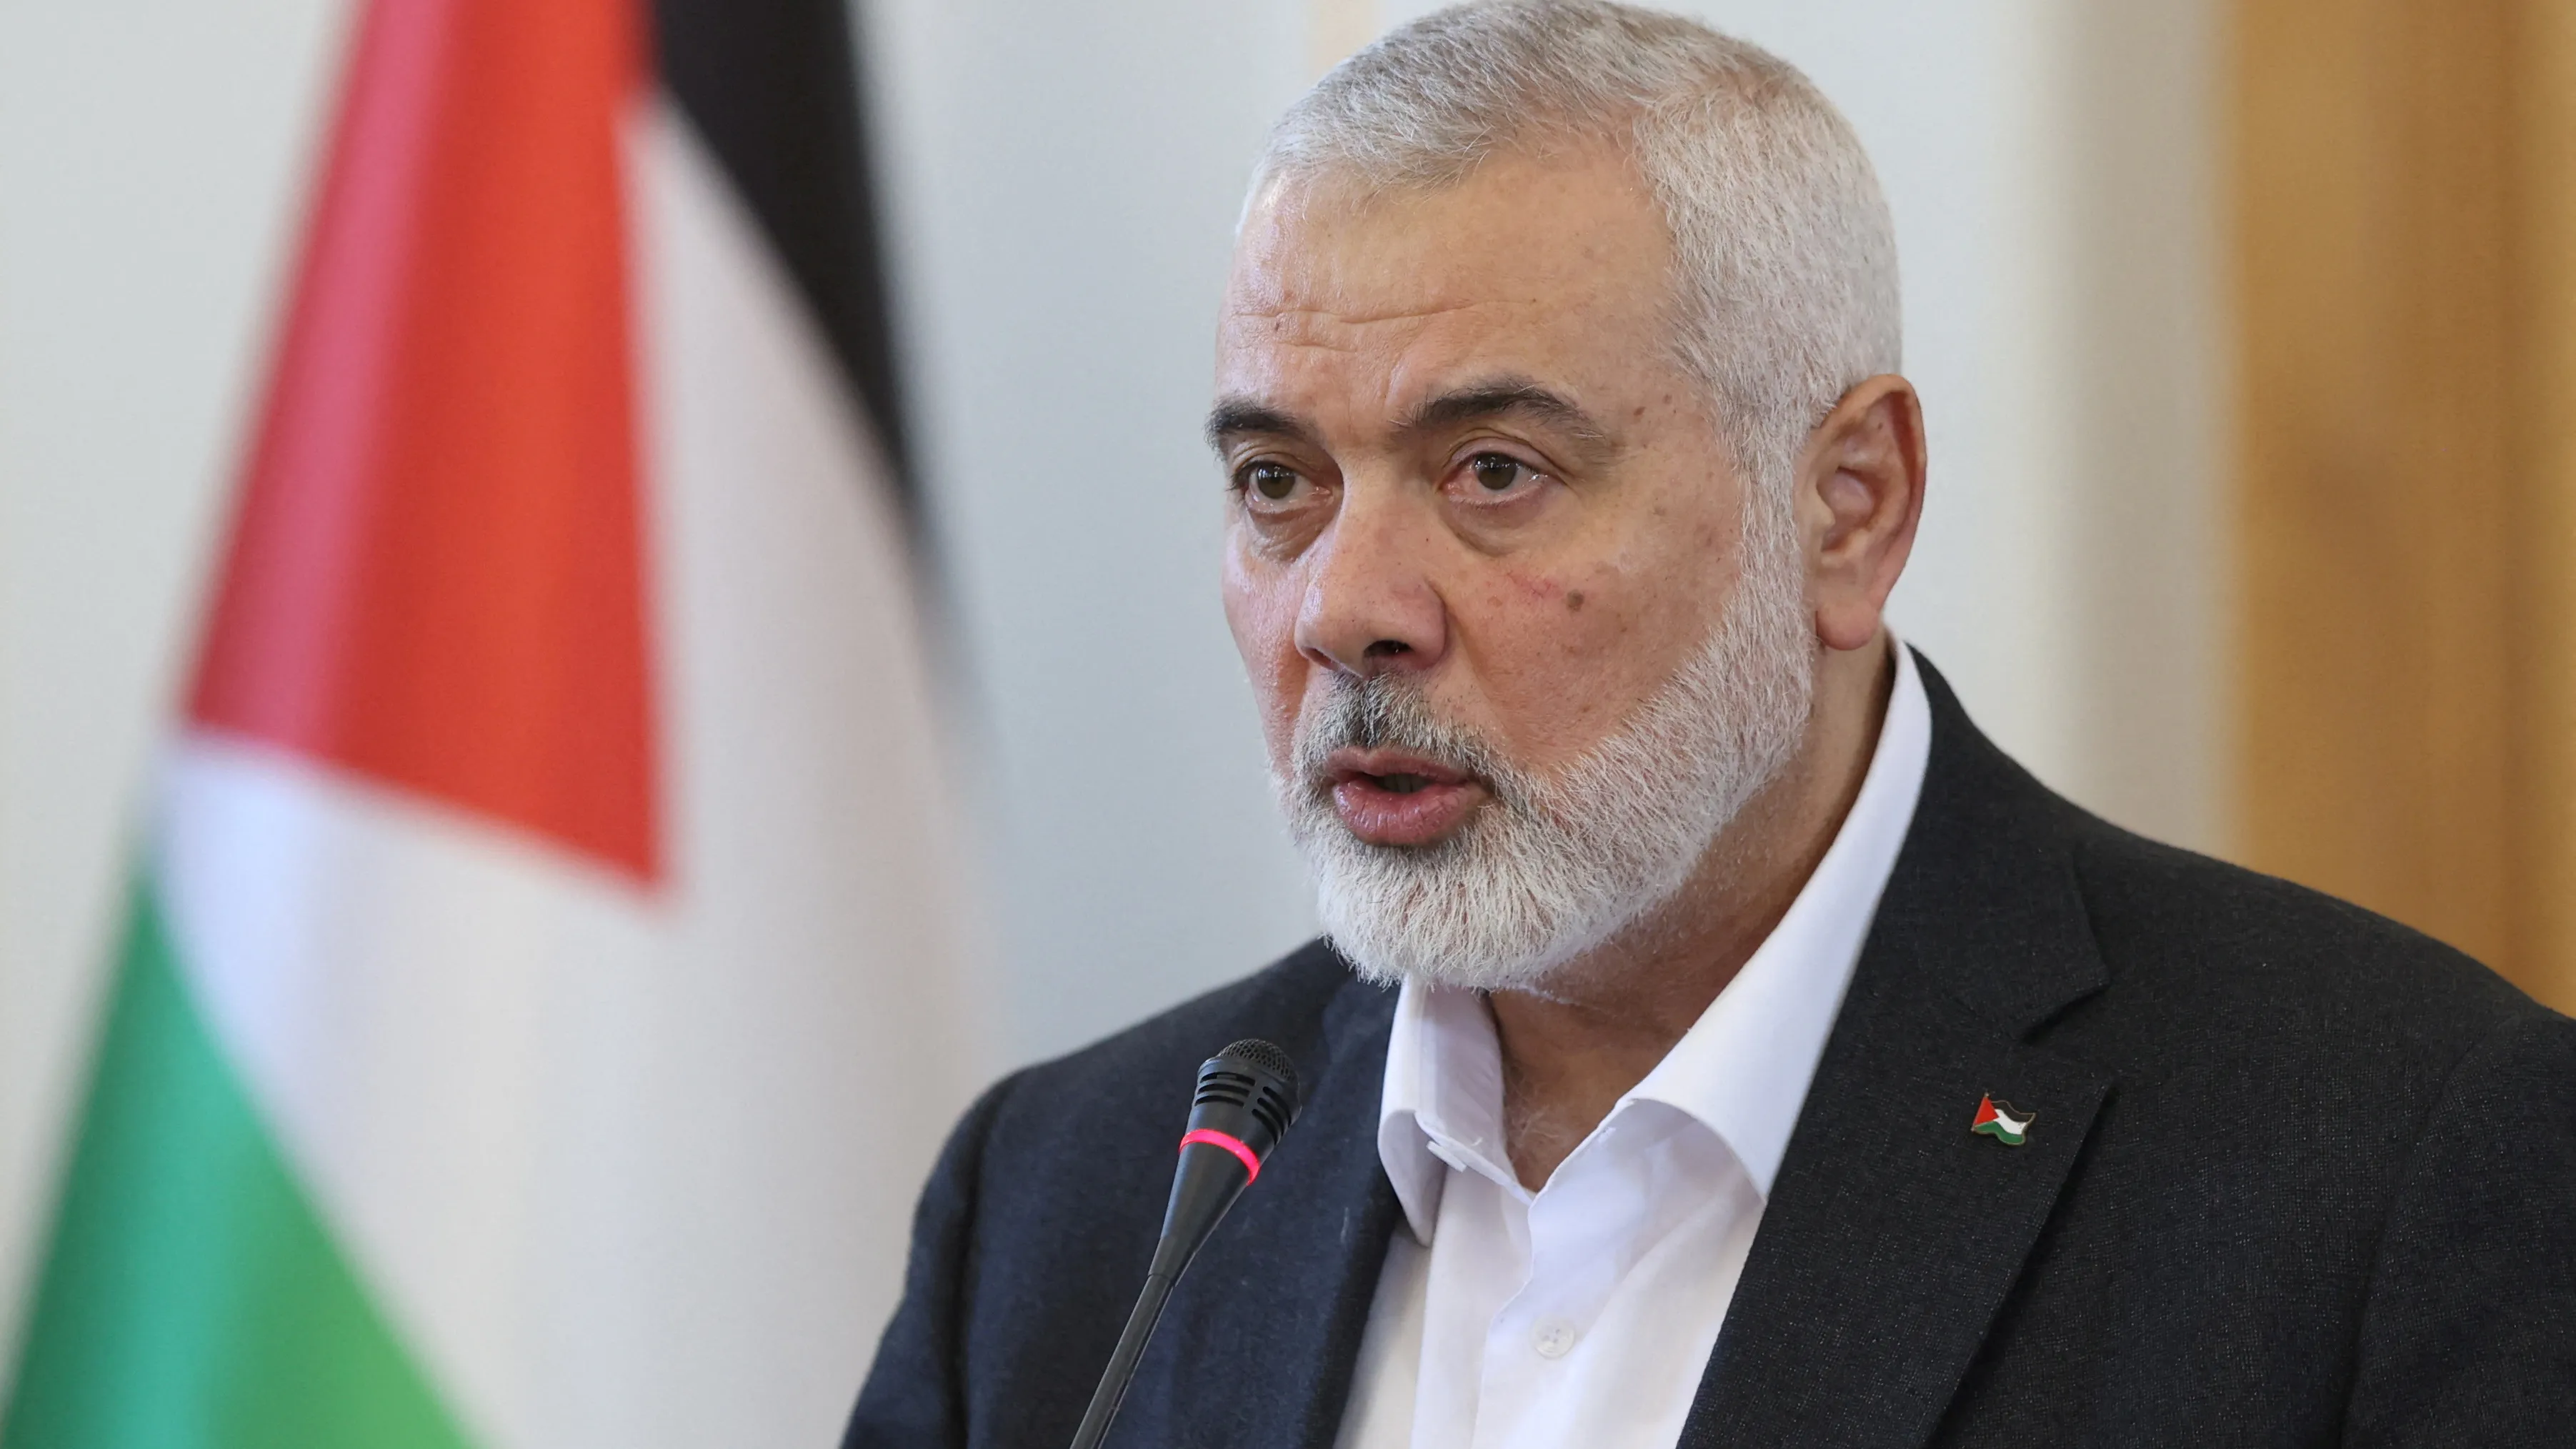 Hamás přistoupil na návrh dohody o příměří. Izraelci ho zkoumají